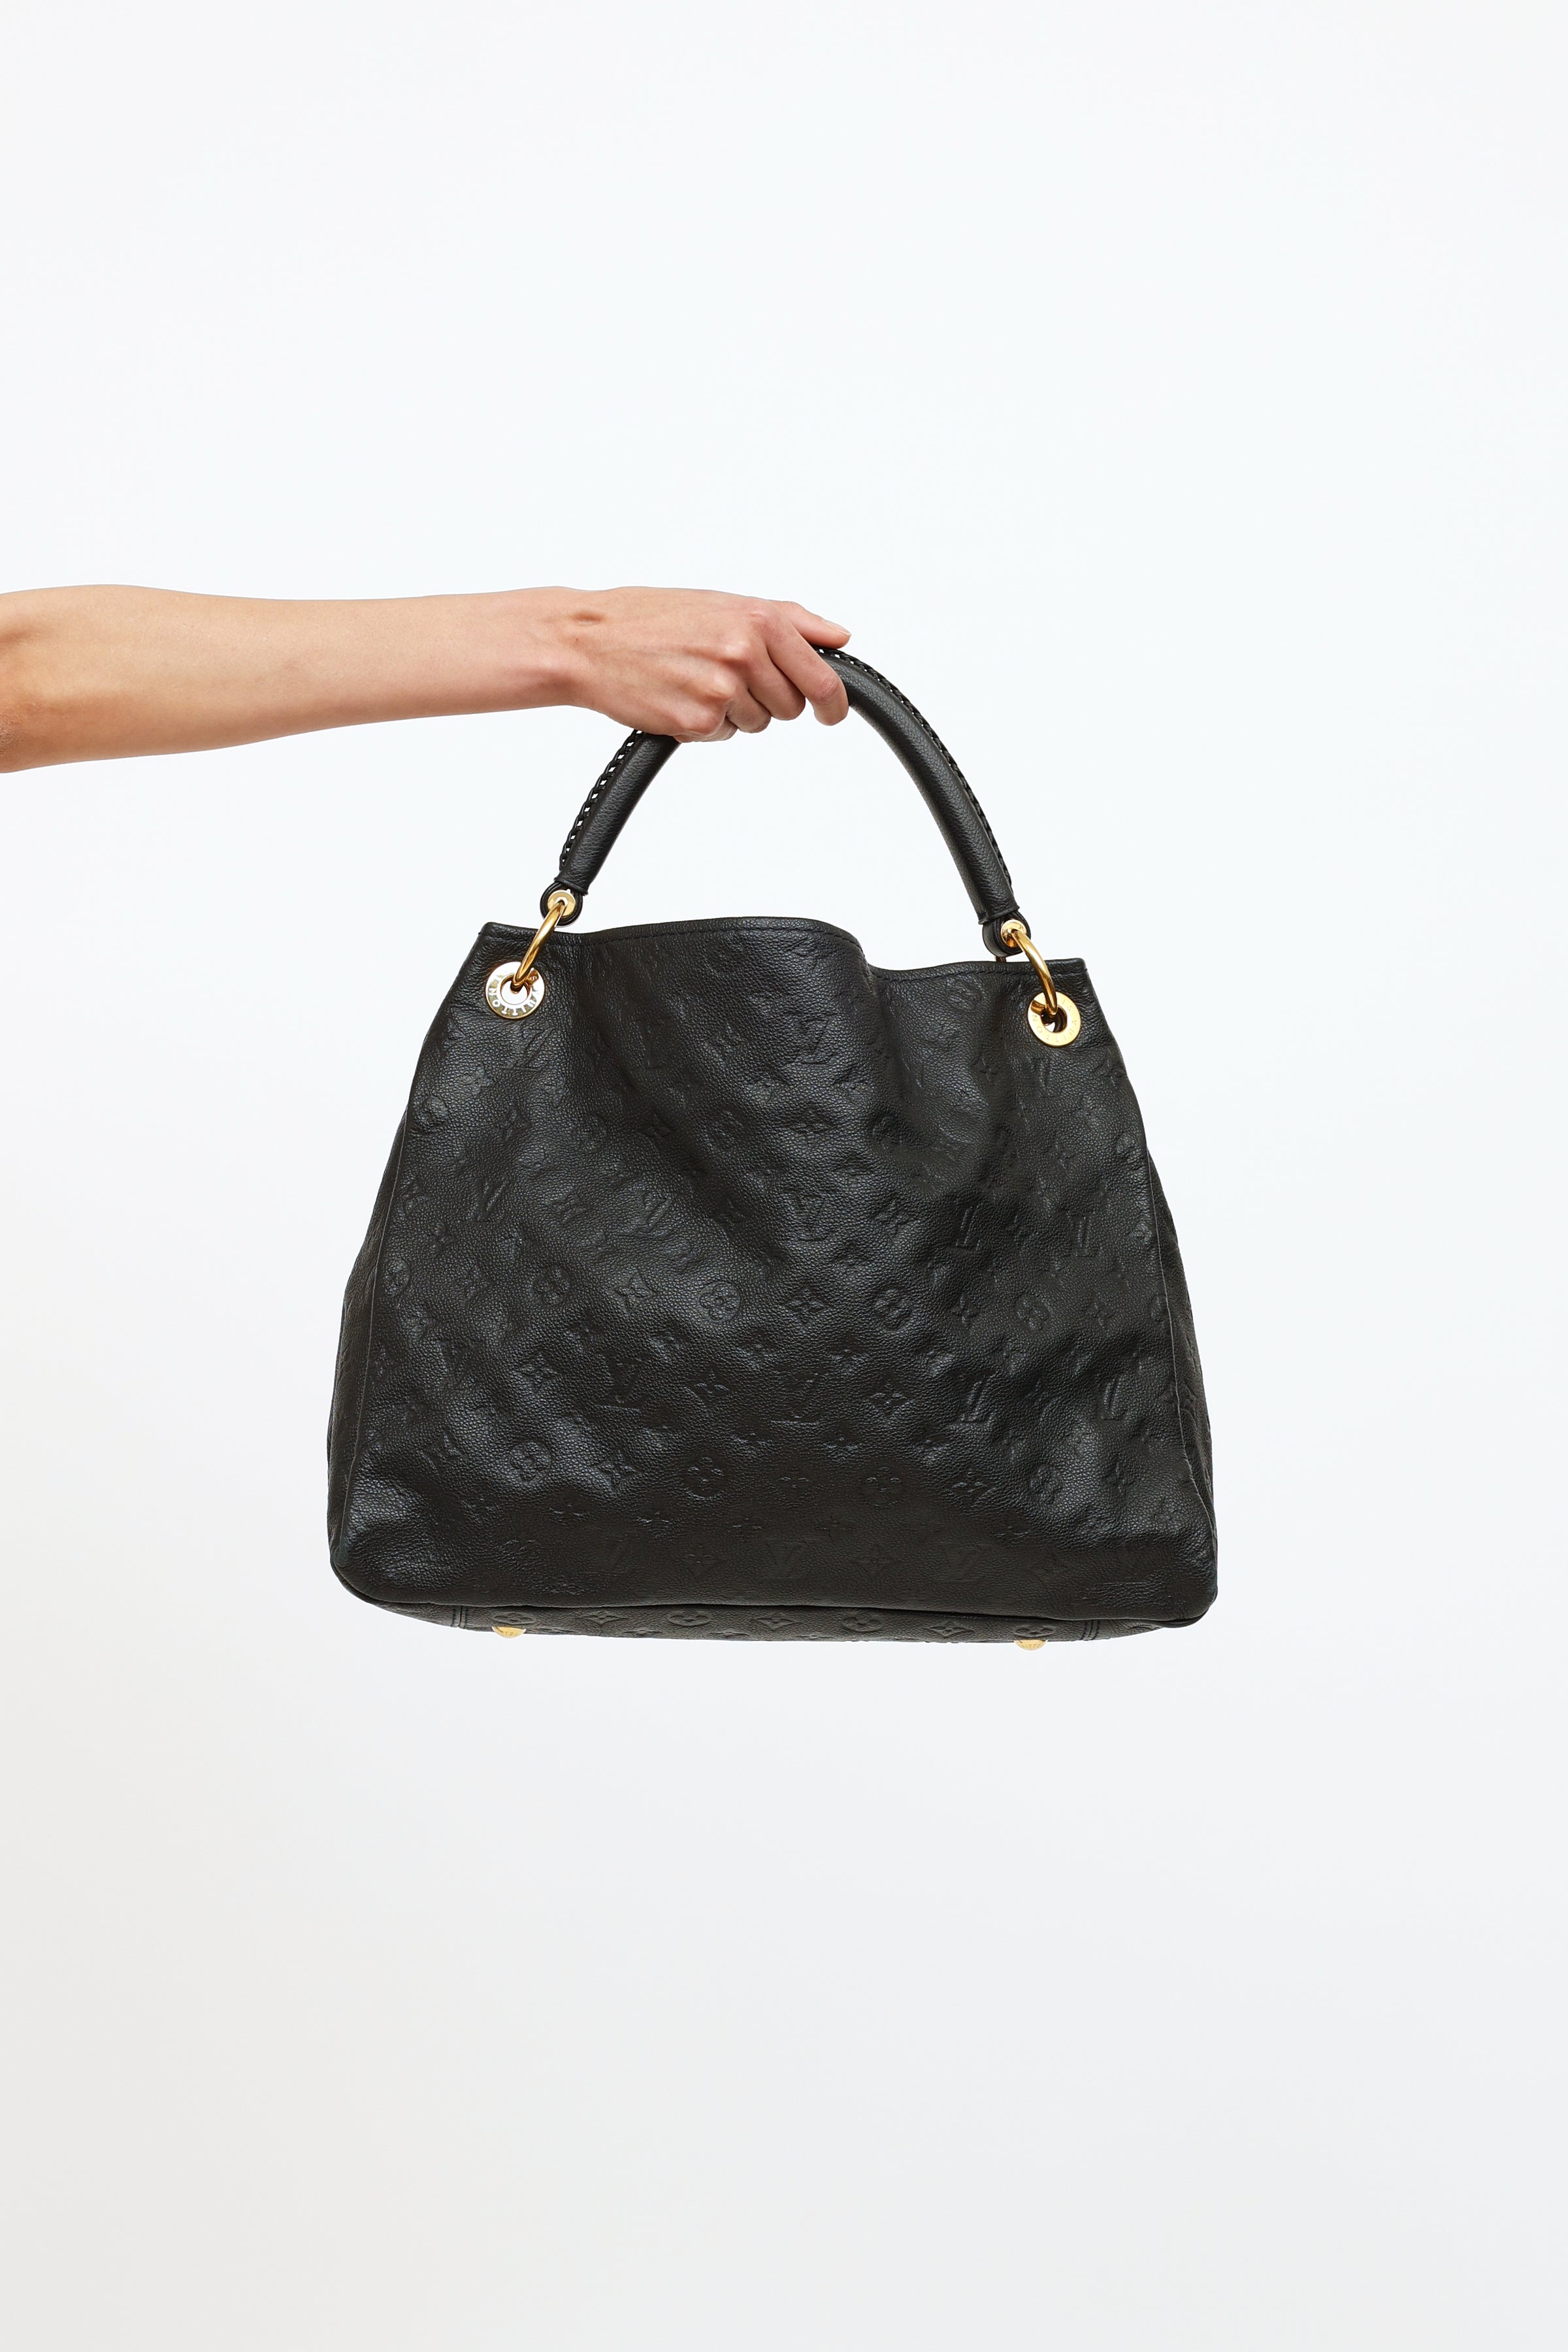 Louis Vuitton Black Monogram Leather Artsy MM Bag. - Unique